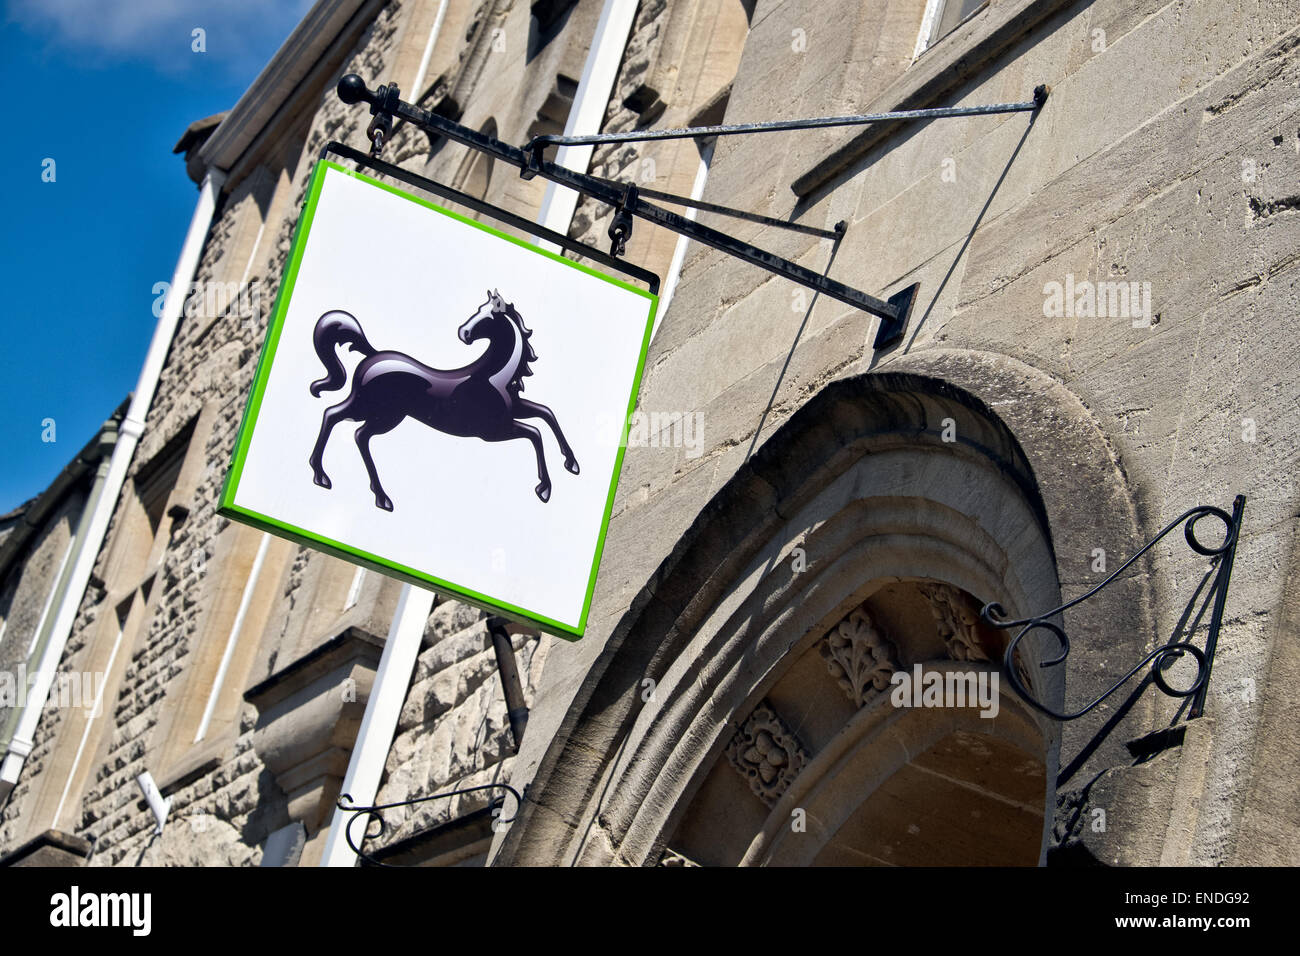 La Lloyds Bank cavallo nero segno appeso, visualizzato sopra l'ingresso,al di fuori di una filiale del Regno Unito in una giornata di sole Foto Stock